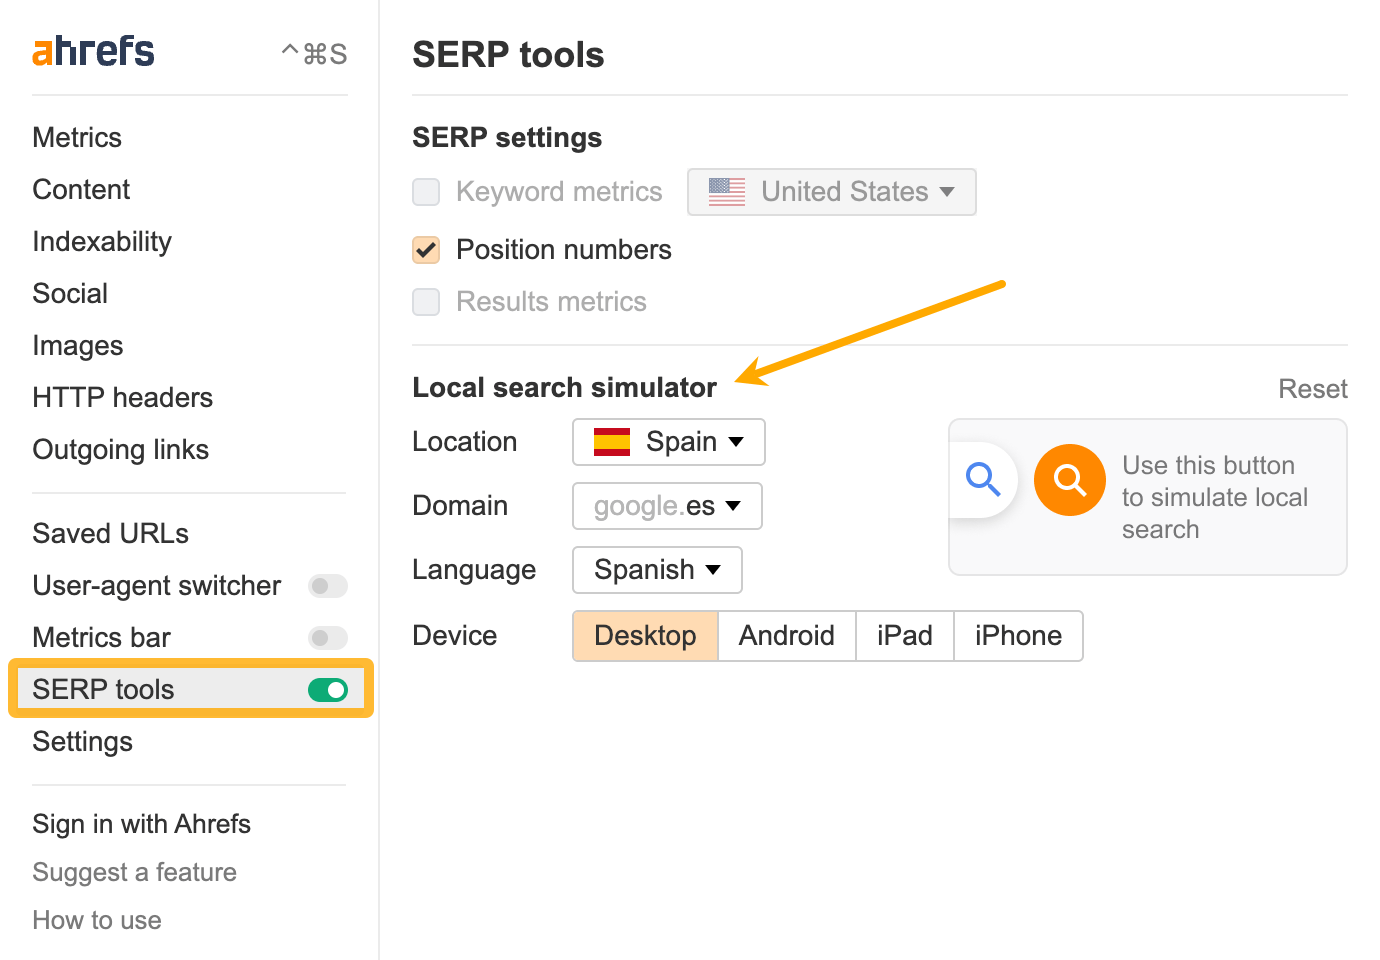 "SERP tools" section, via Ahrefs' SEO Toolbar